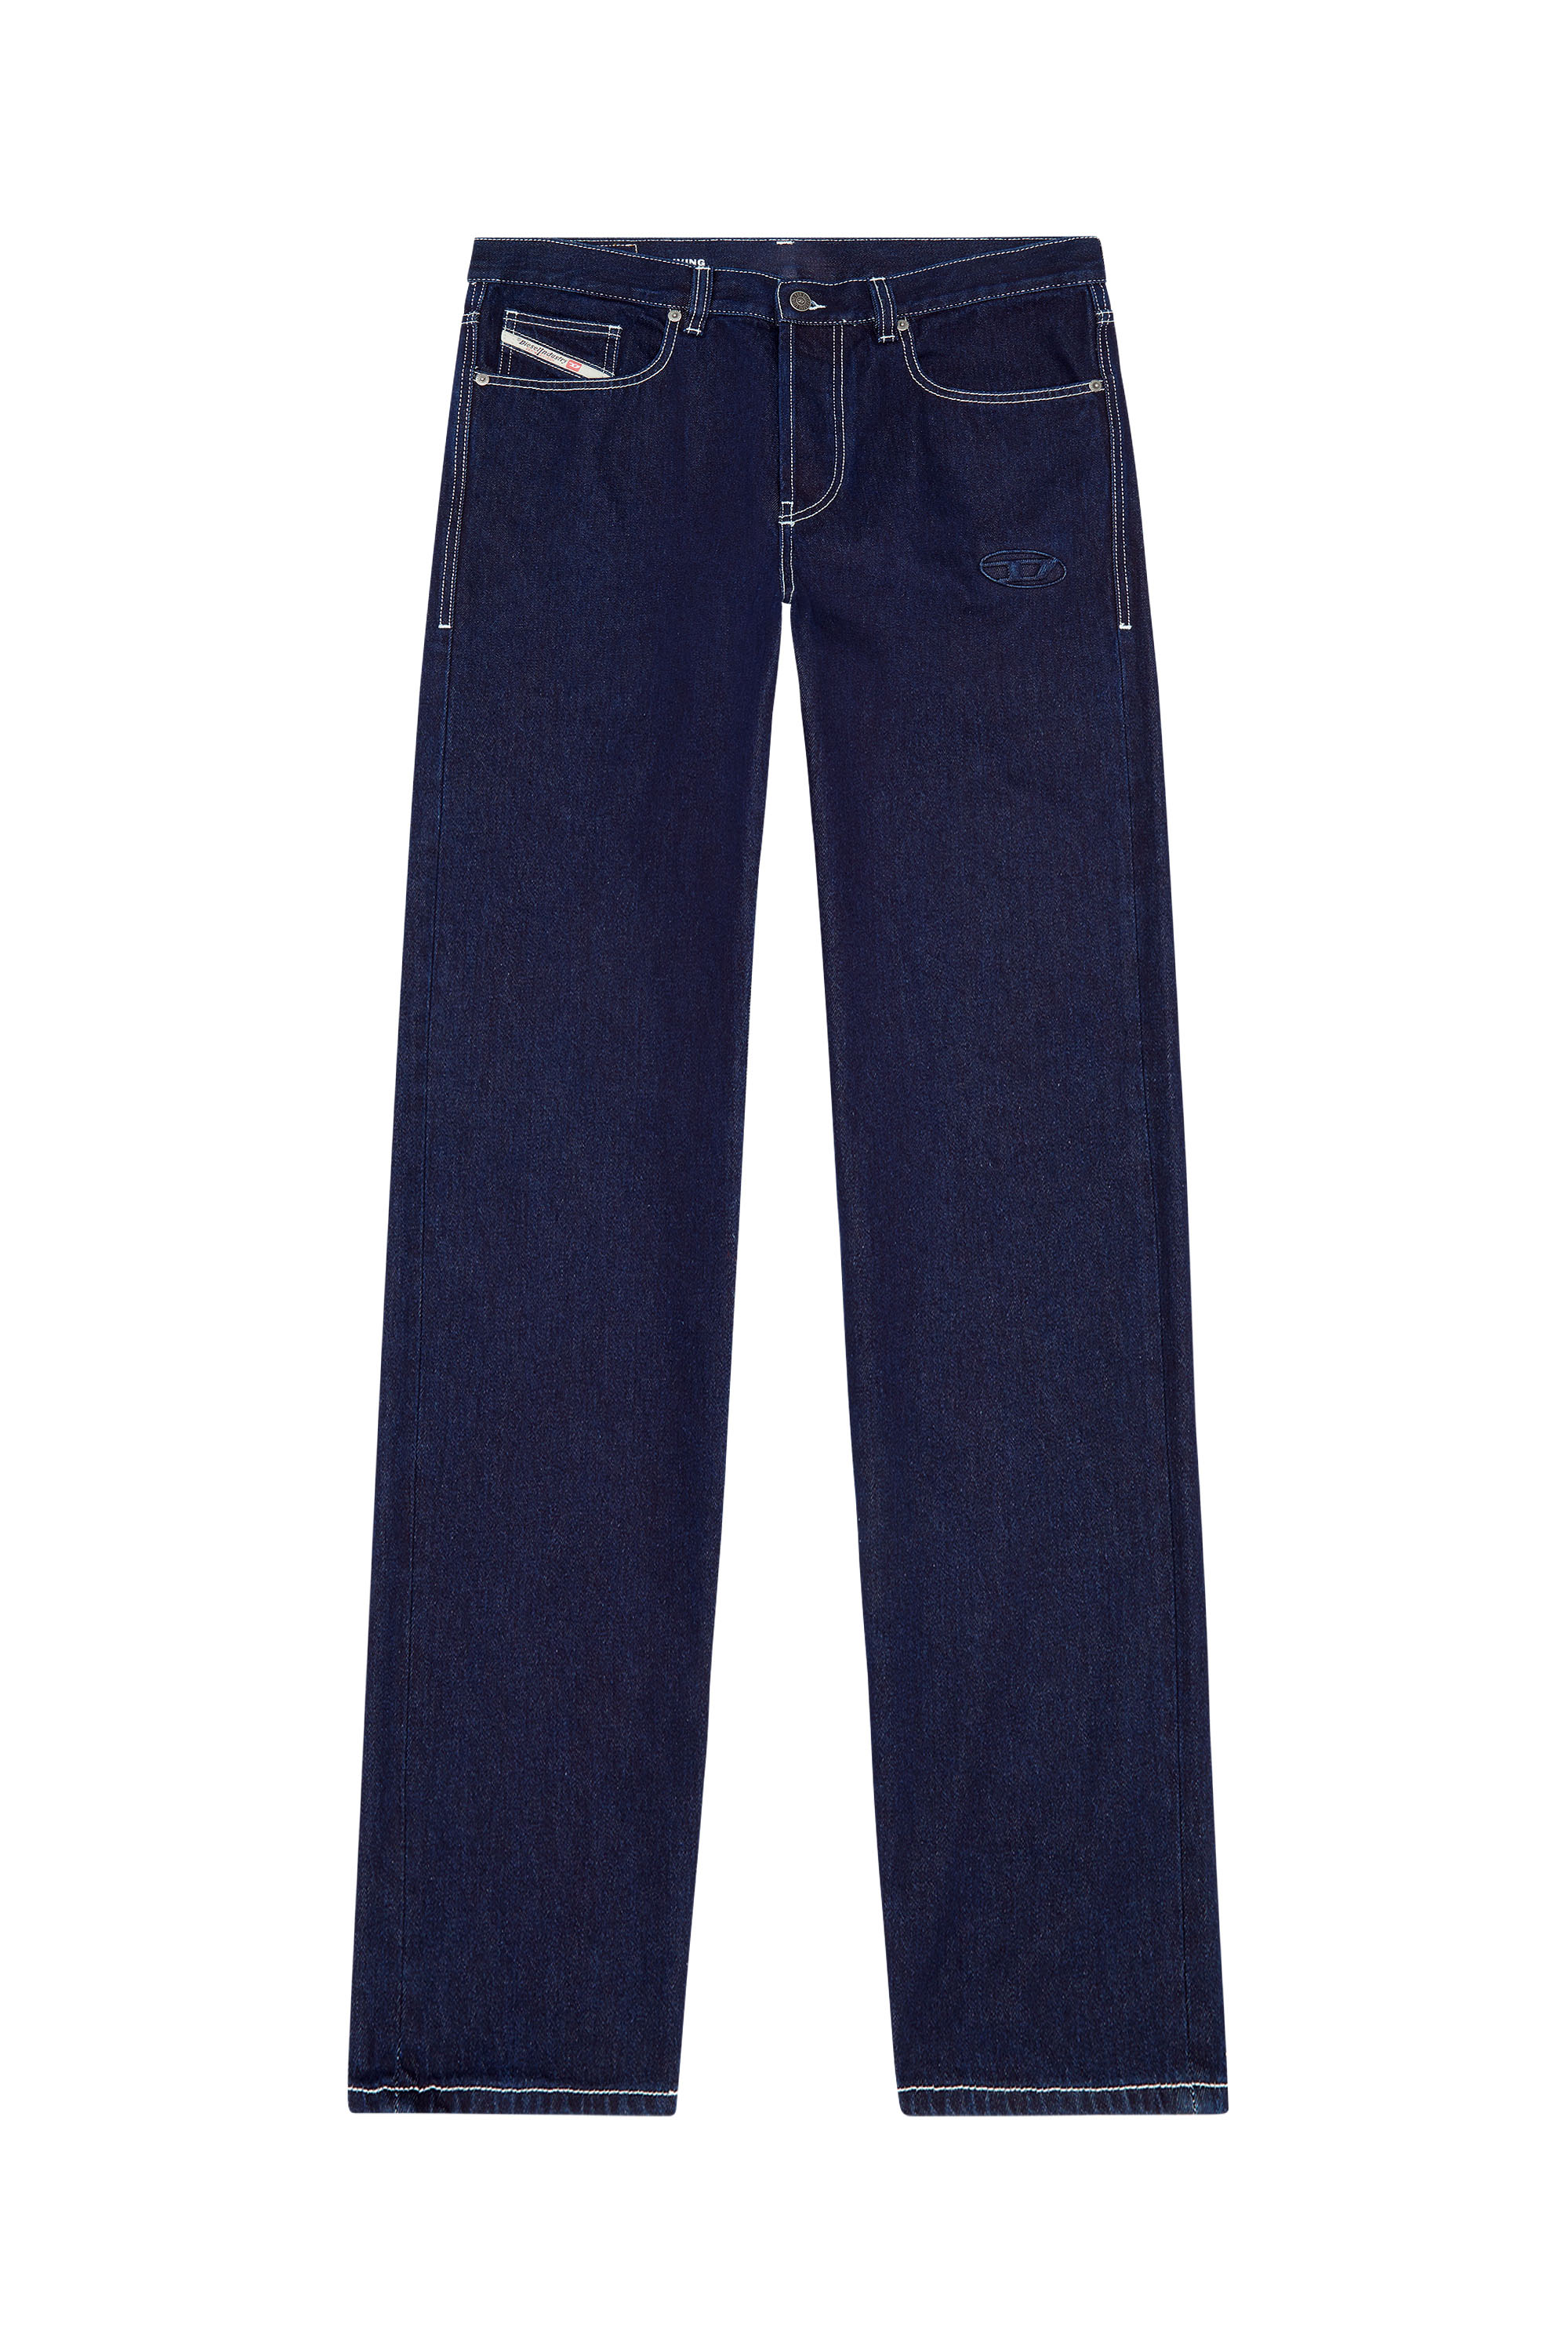 2010 D-Macs 09F19 Straight Jeans, Dunkelblau - Jeans